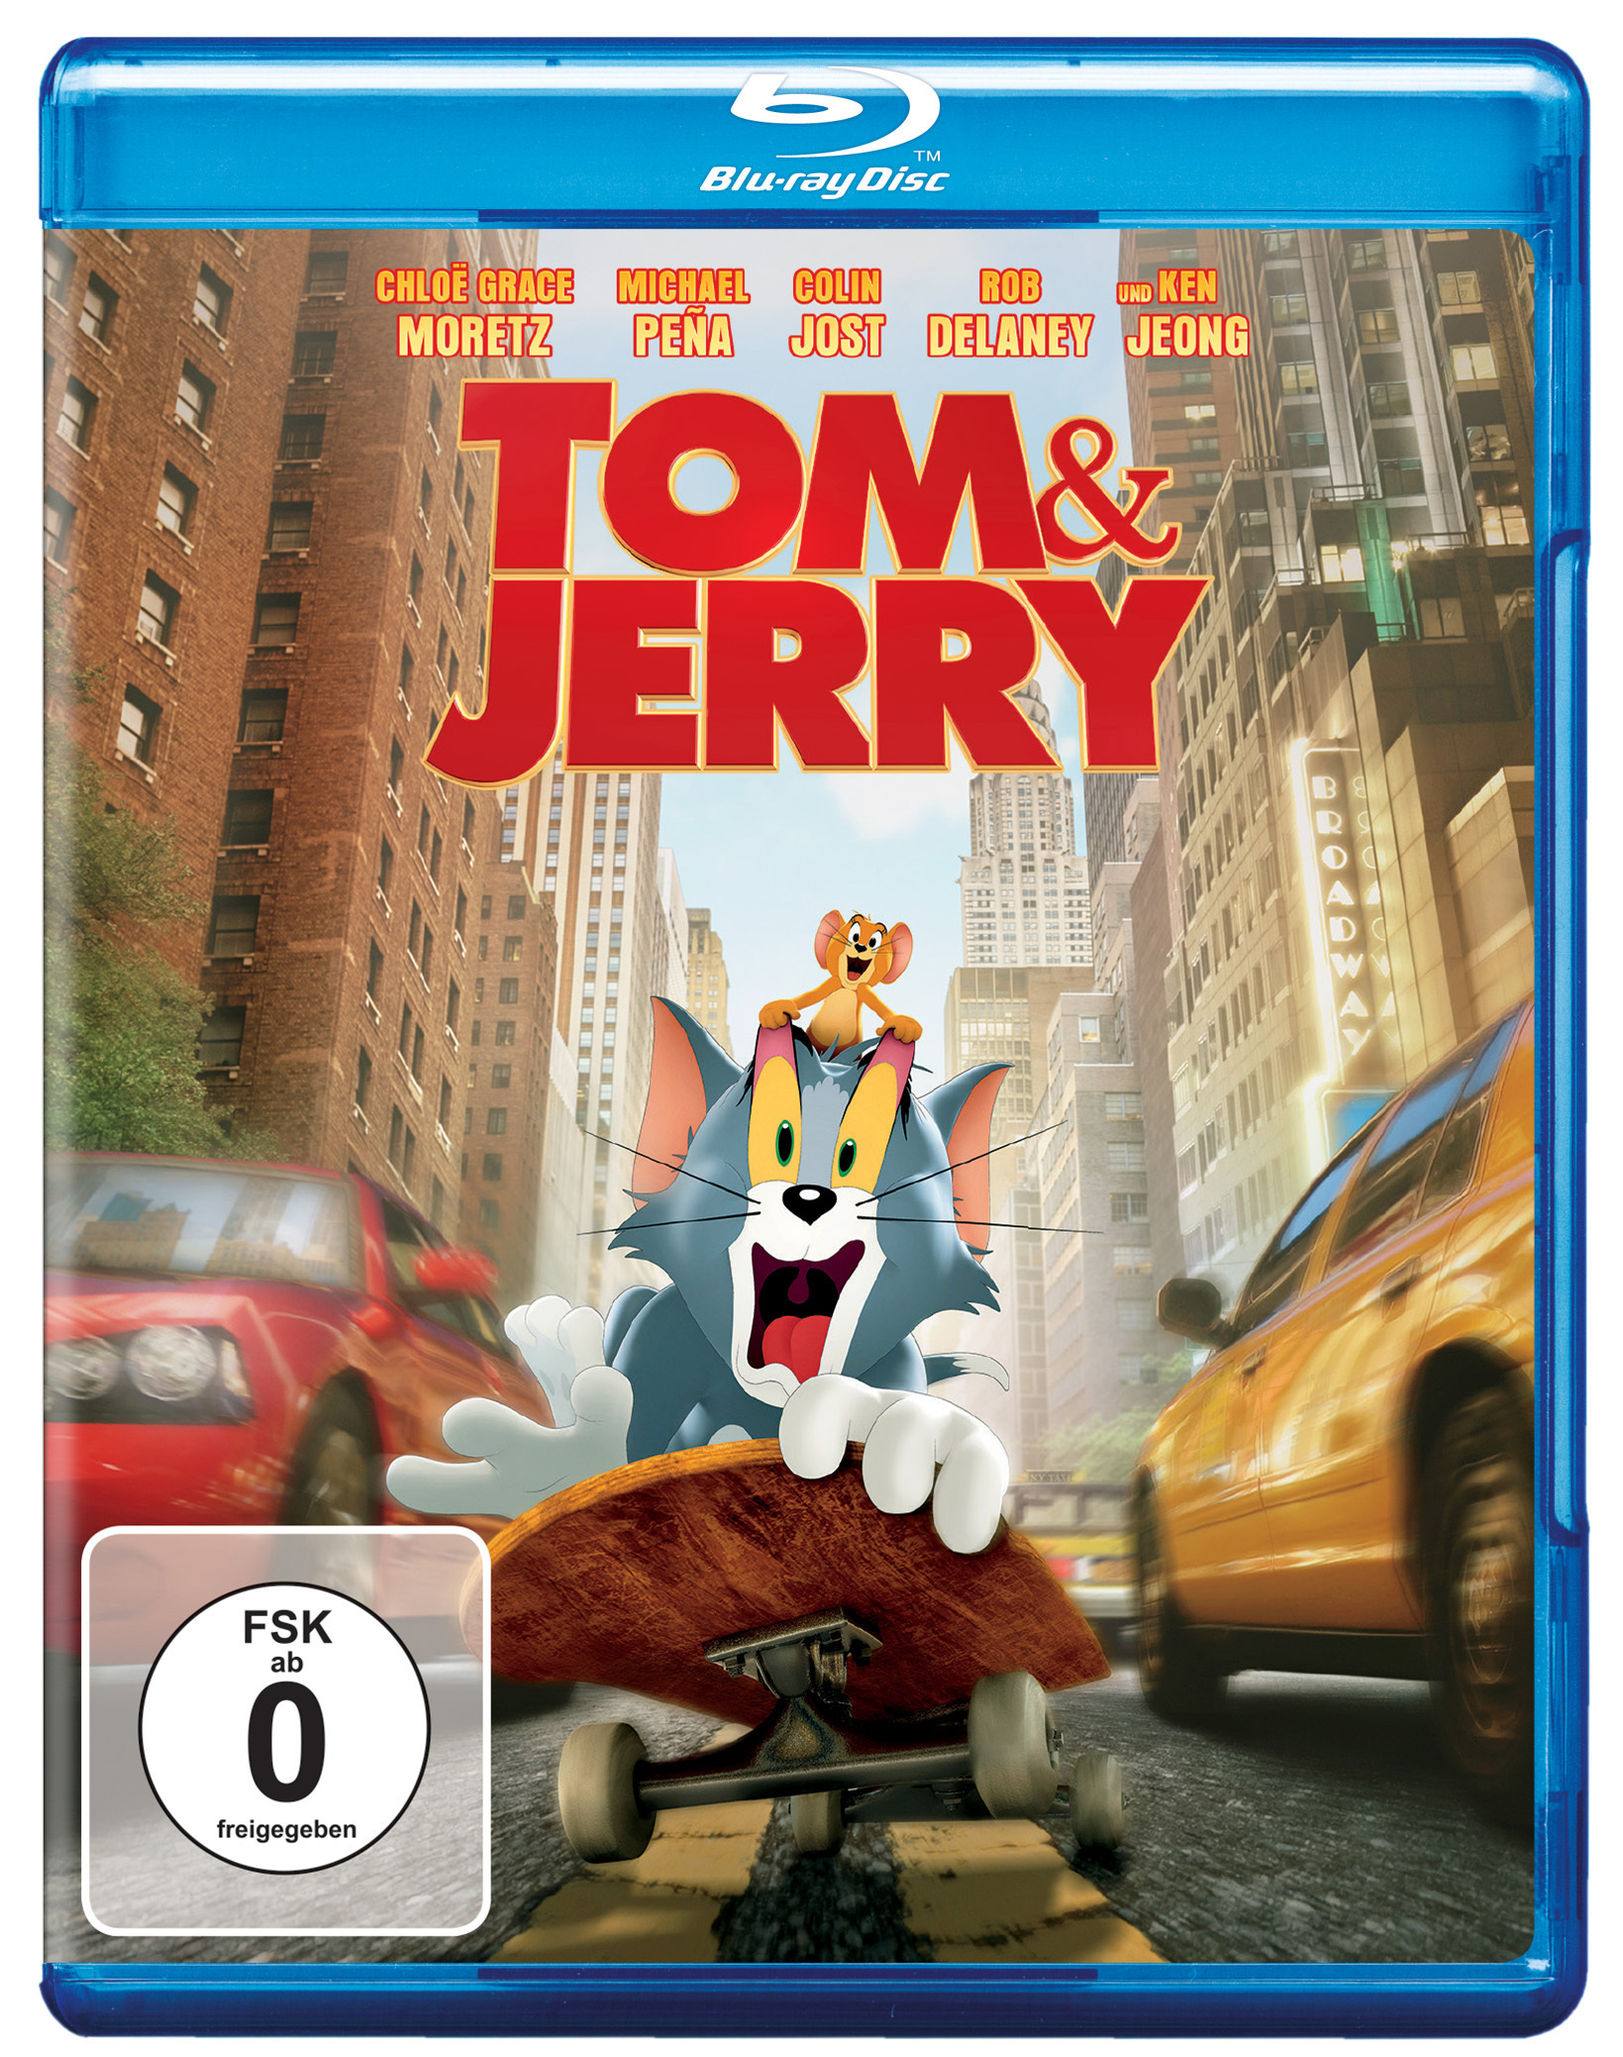 Tom & Jerry 2021 Blu-ray jetzt im Weltbild.ch Shop bestellen